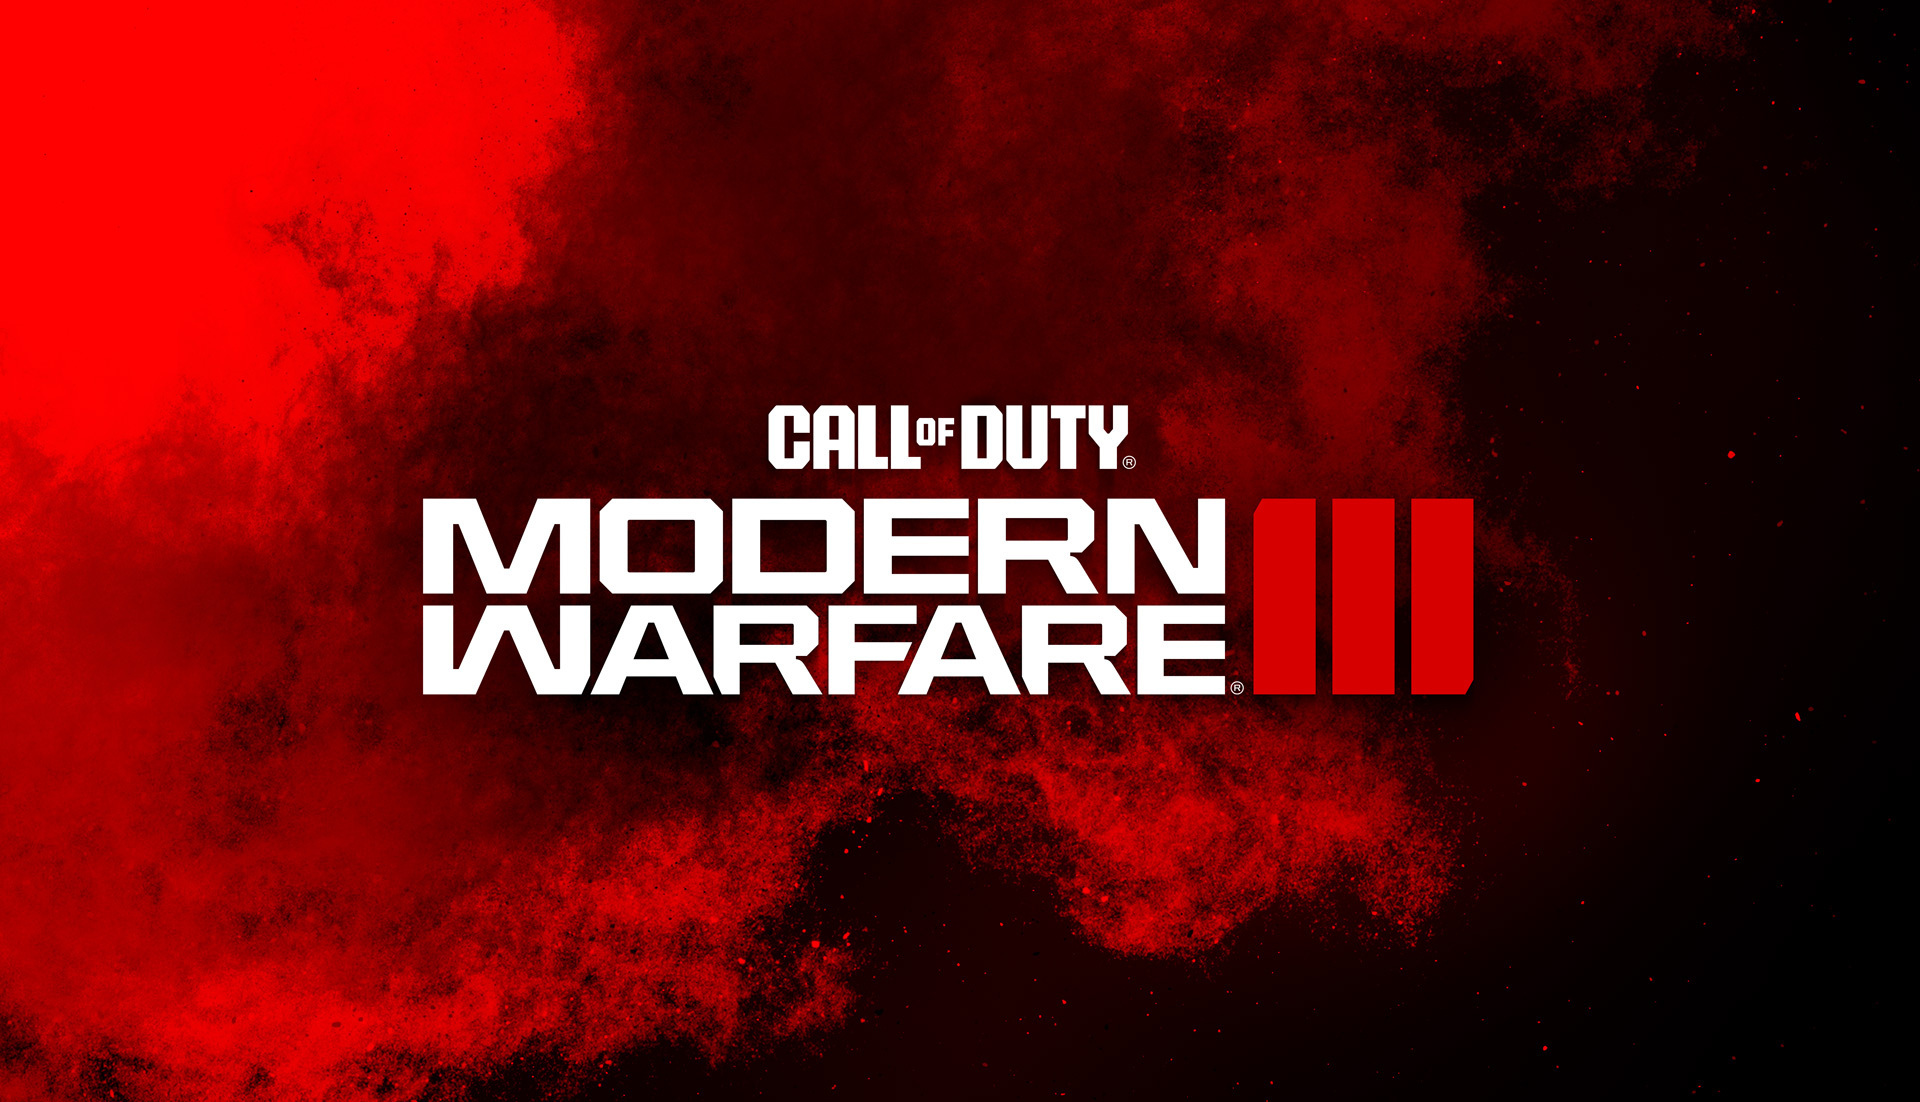 Logotipo de Call of Duty Modern Warfare 3 con explosión roja.